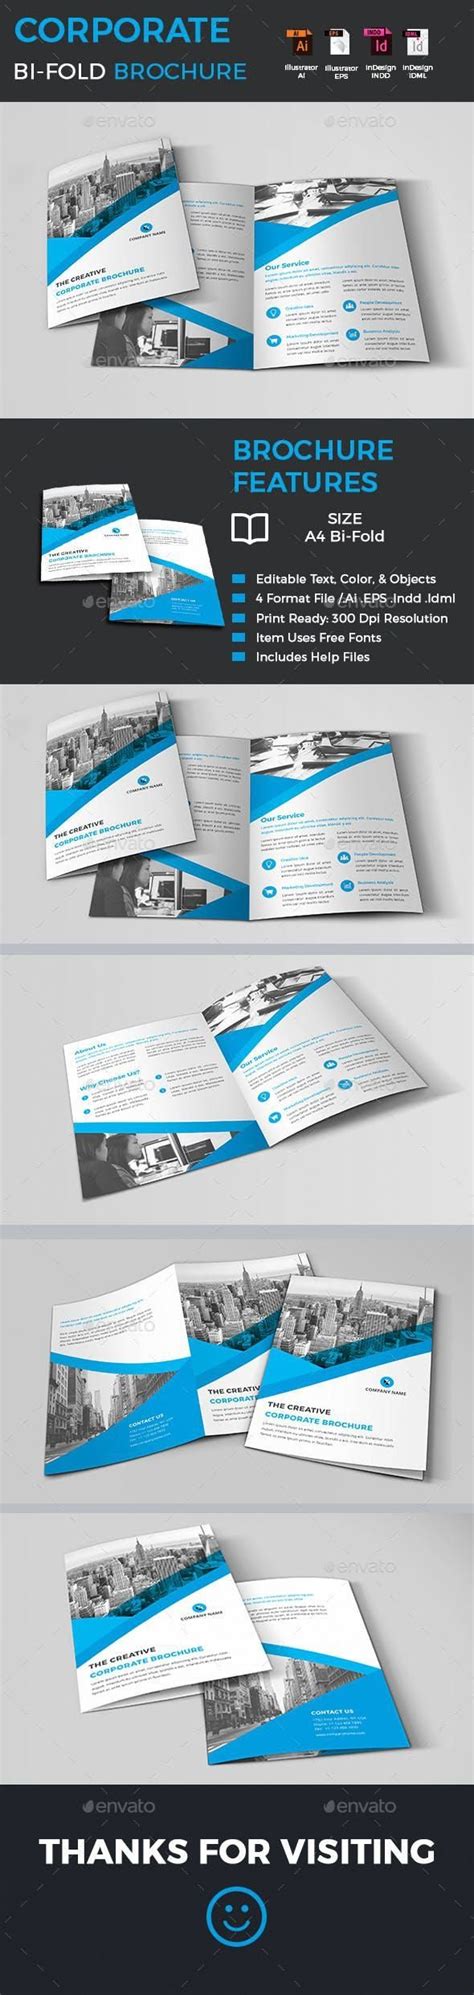 corporate bi fold brochure design brochuretemplates template